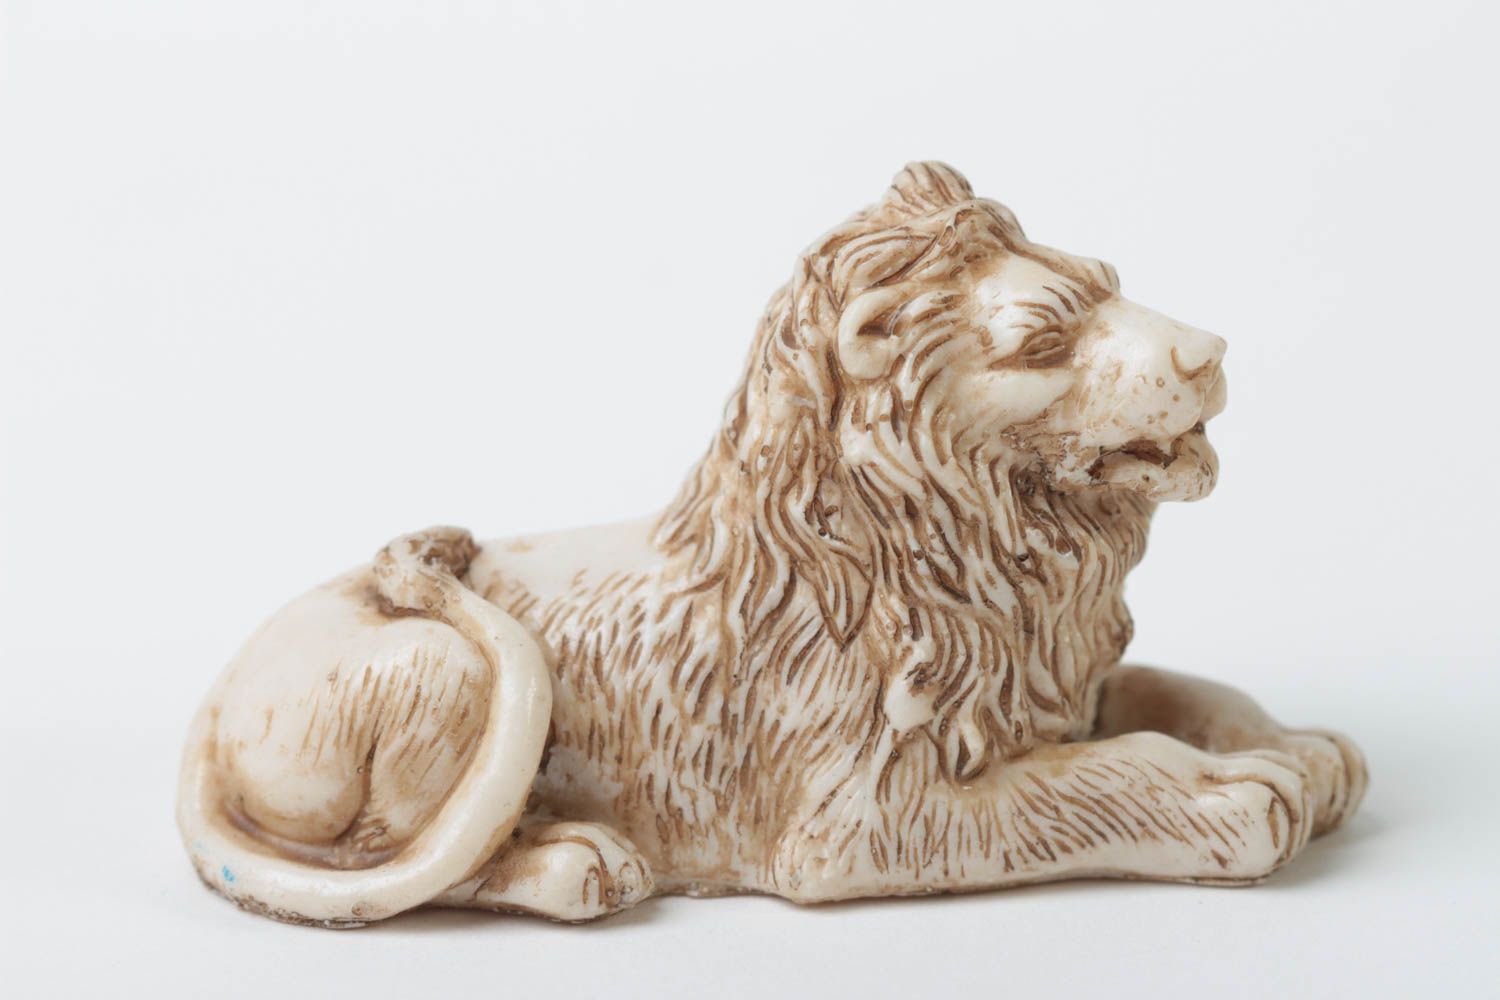 Миниатюрная статуэтка из полимерной смолы в виде лежащего льва ручной работы фото 3